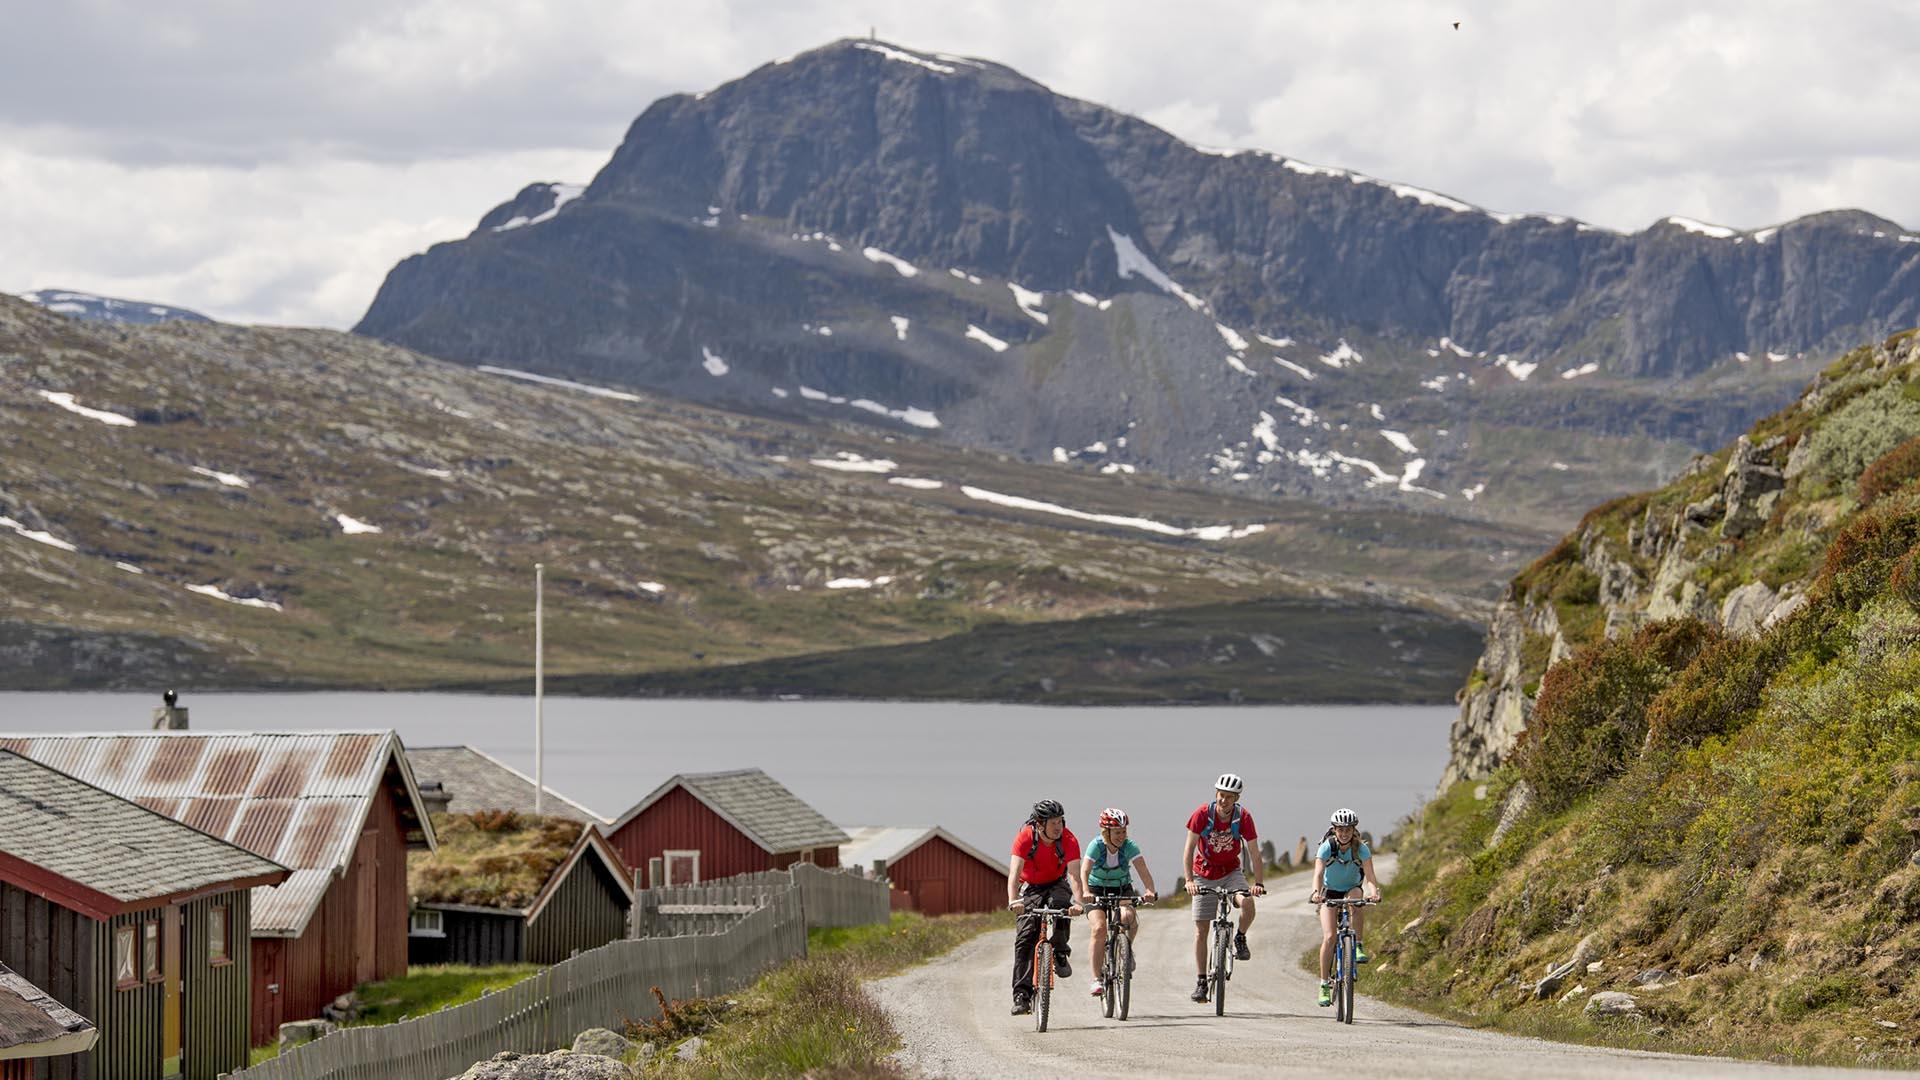 Fire syklister runder en fjellknaus på en stølsvei i høyfjellet. På nedsiden av veien ses noen røde stølshus og bakenfor et vann. Bakerst ruver et stort fjell.